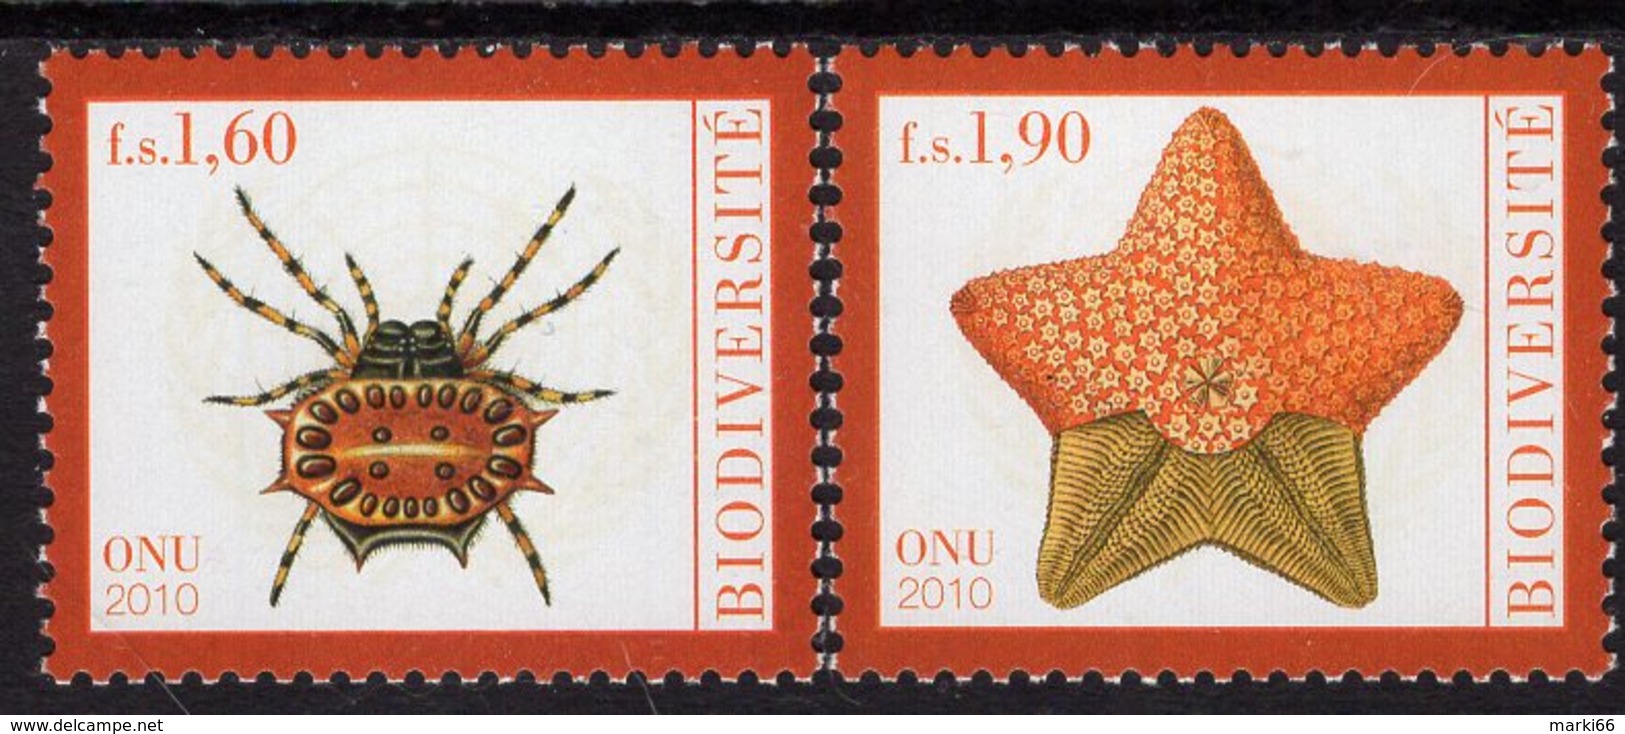 United Nations - Geneva - 2010 - Biodiversity - Mint Stamp Set - Neufs